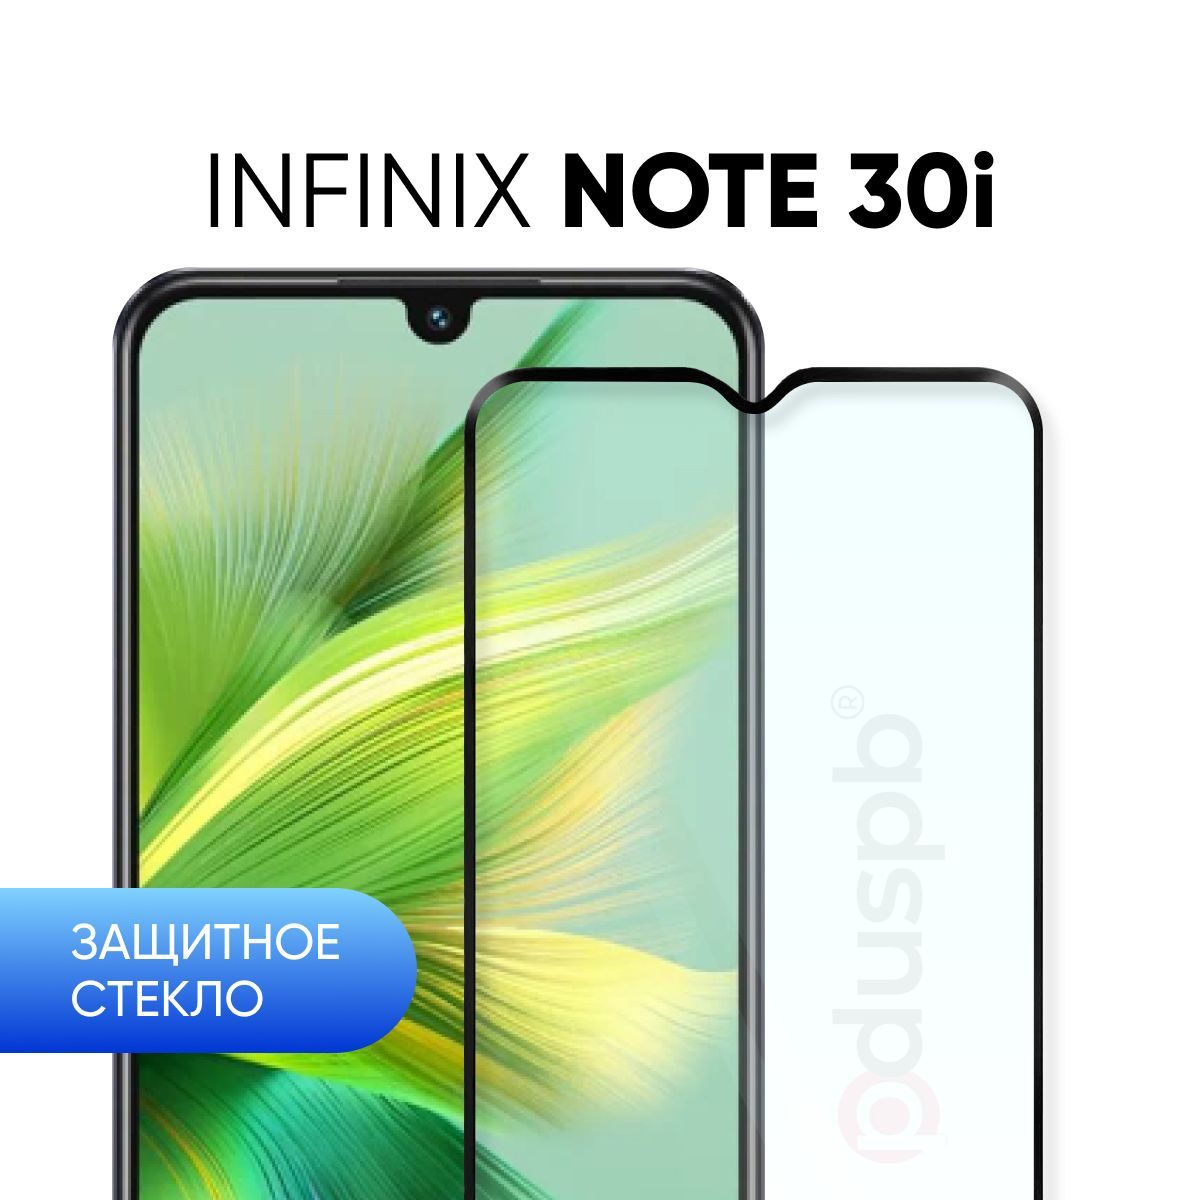 Инфиникс Note 30i. Инфиникс ноут 30 i. Смартфон Infinix Note 30i. Infinix Note 30 характеристики.